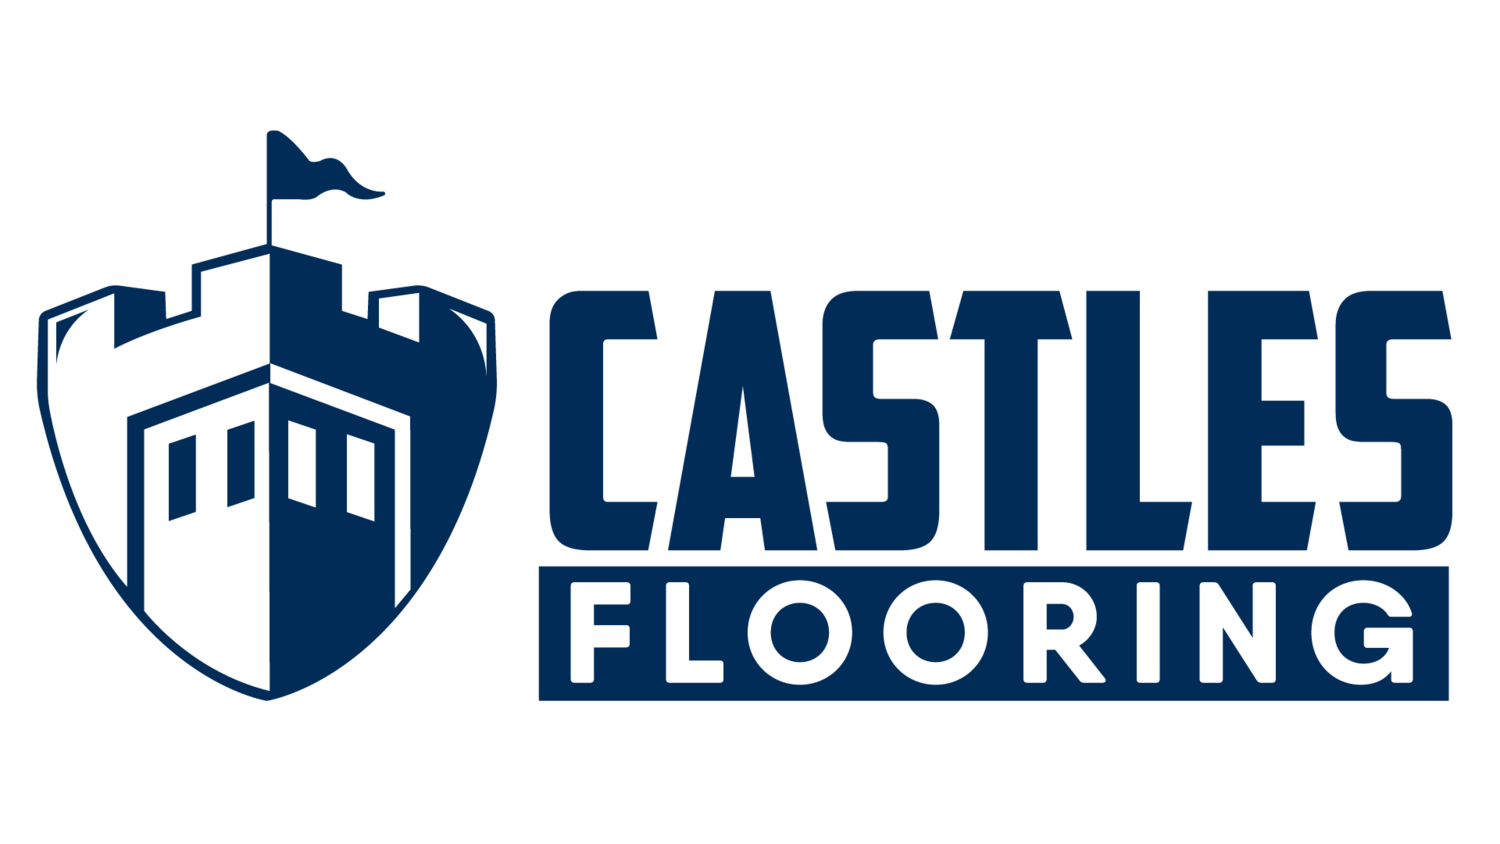 Castles Flooring